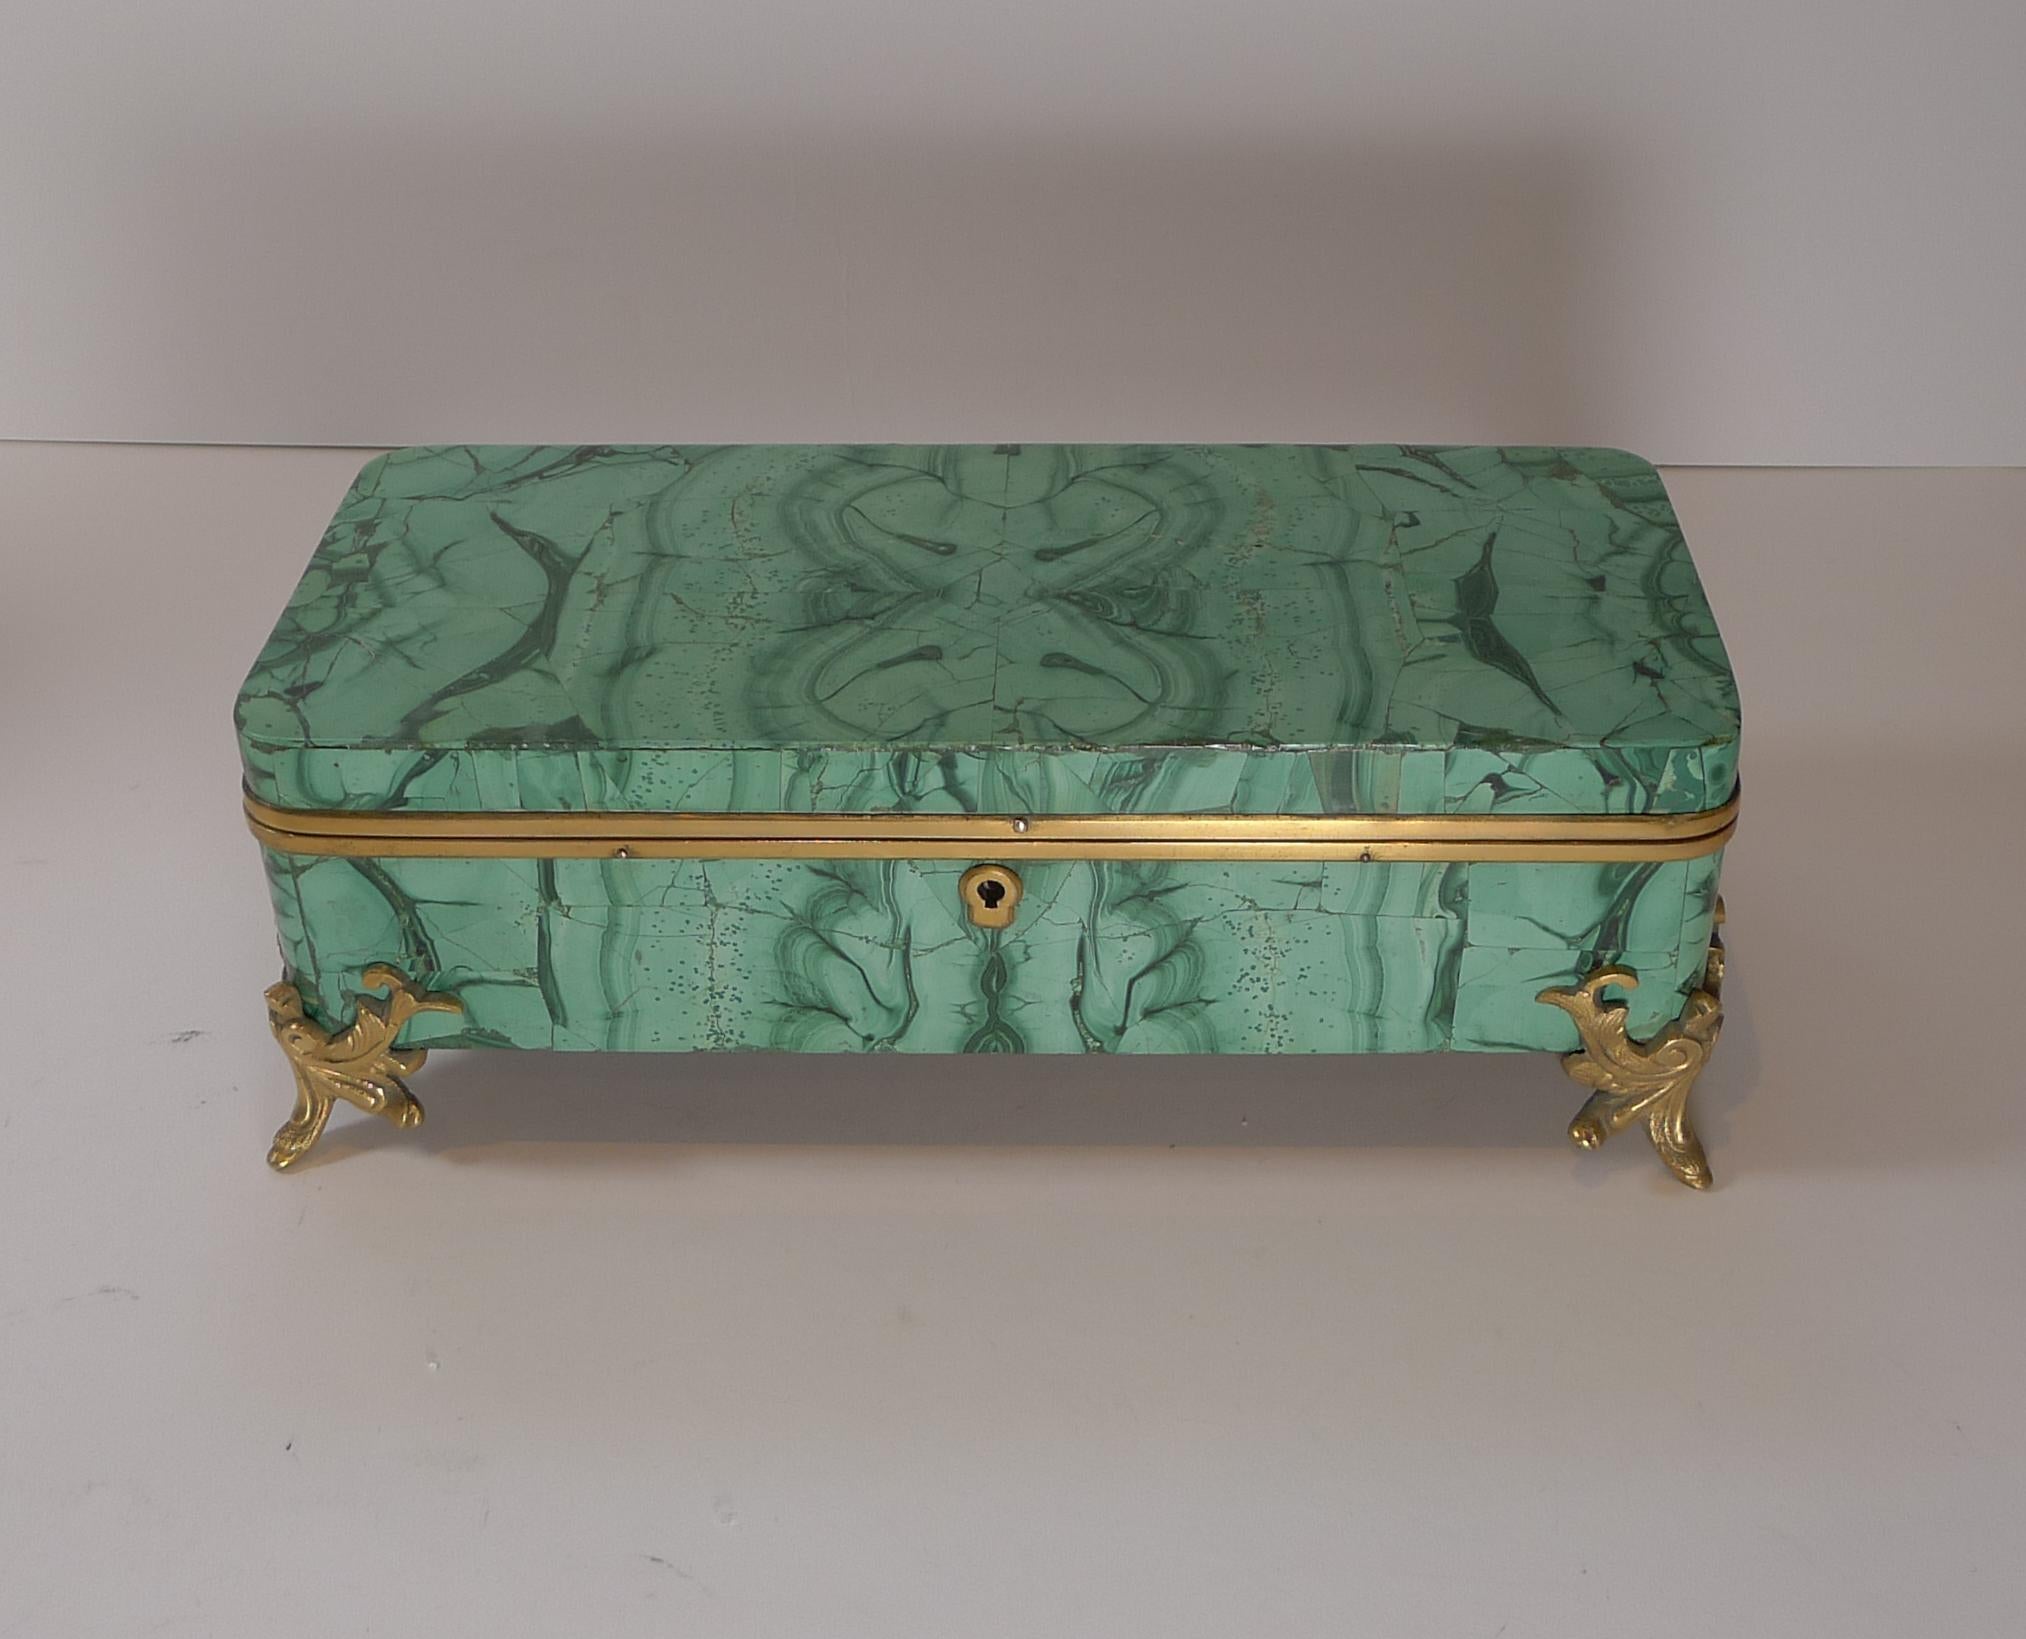 Une boîte à bijoux vraiment fabuleuse de la fin du XIXe siècle faite d'un bel exemple de malachite. La première image est la couleur la plus vraie en personne.

À cette époque, la malachite était exploitée de manière agressive dans les montagnes